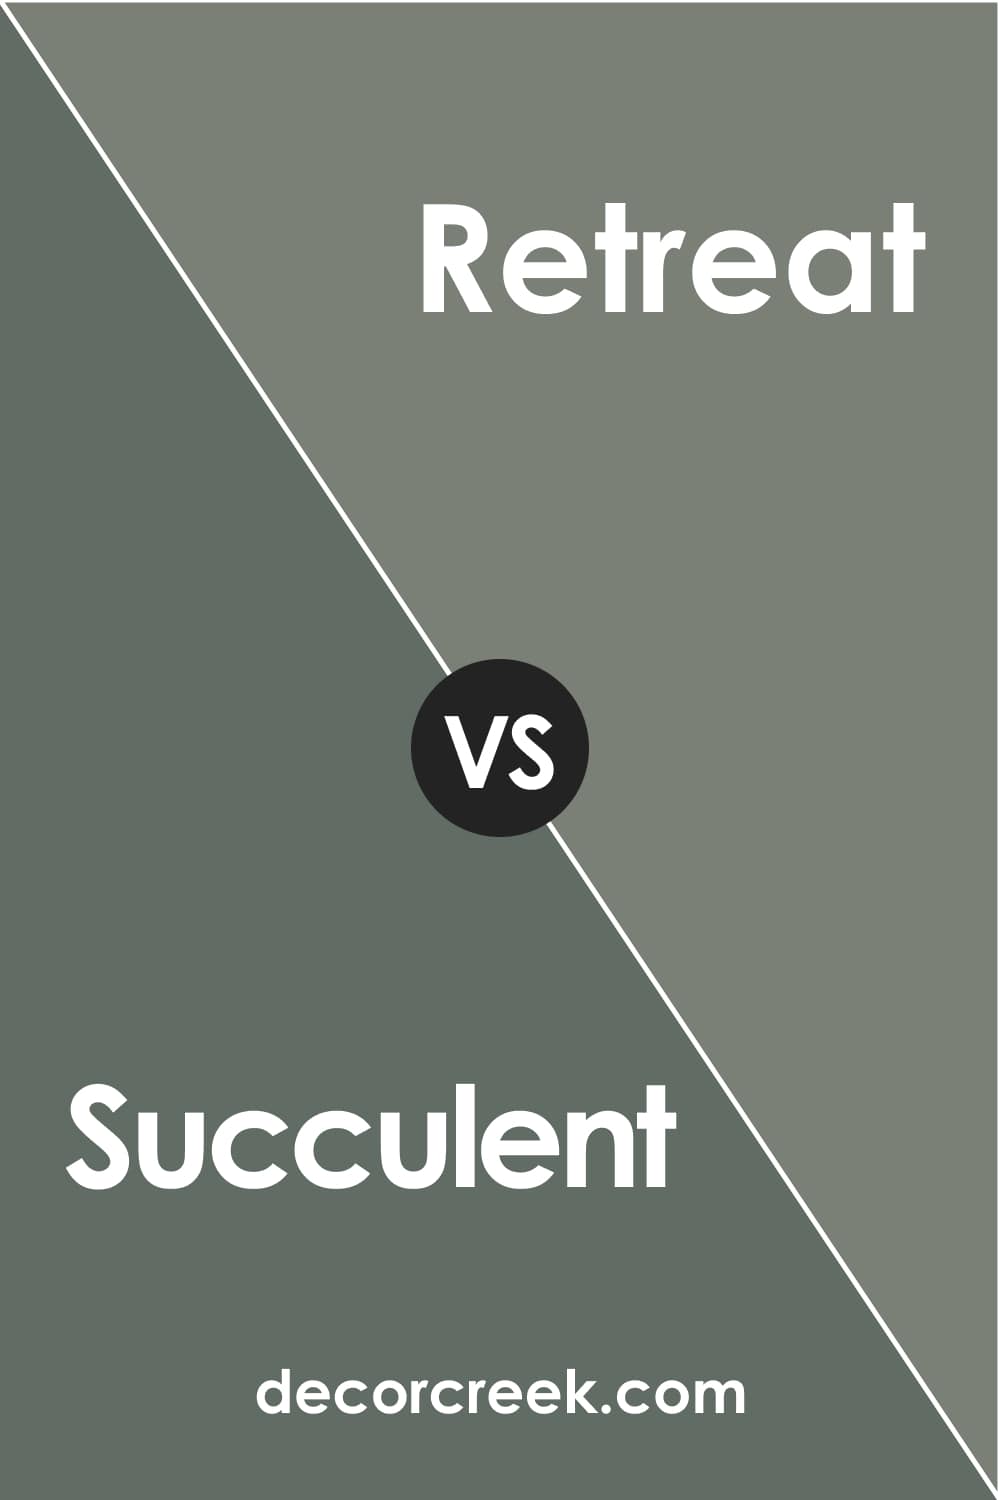 Succulent vs Retreat